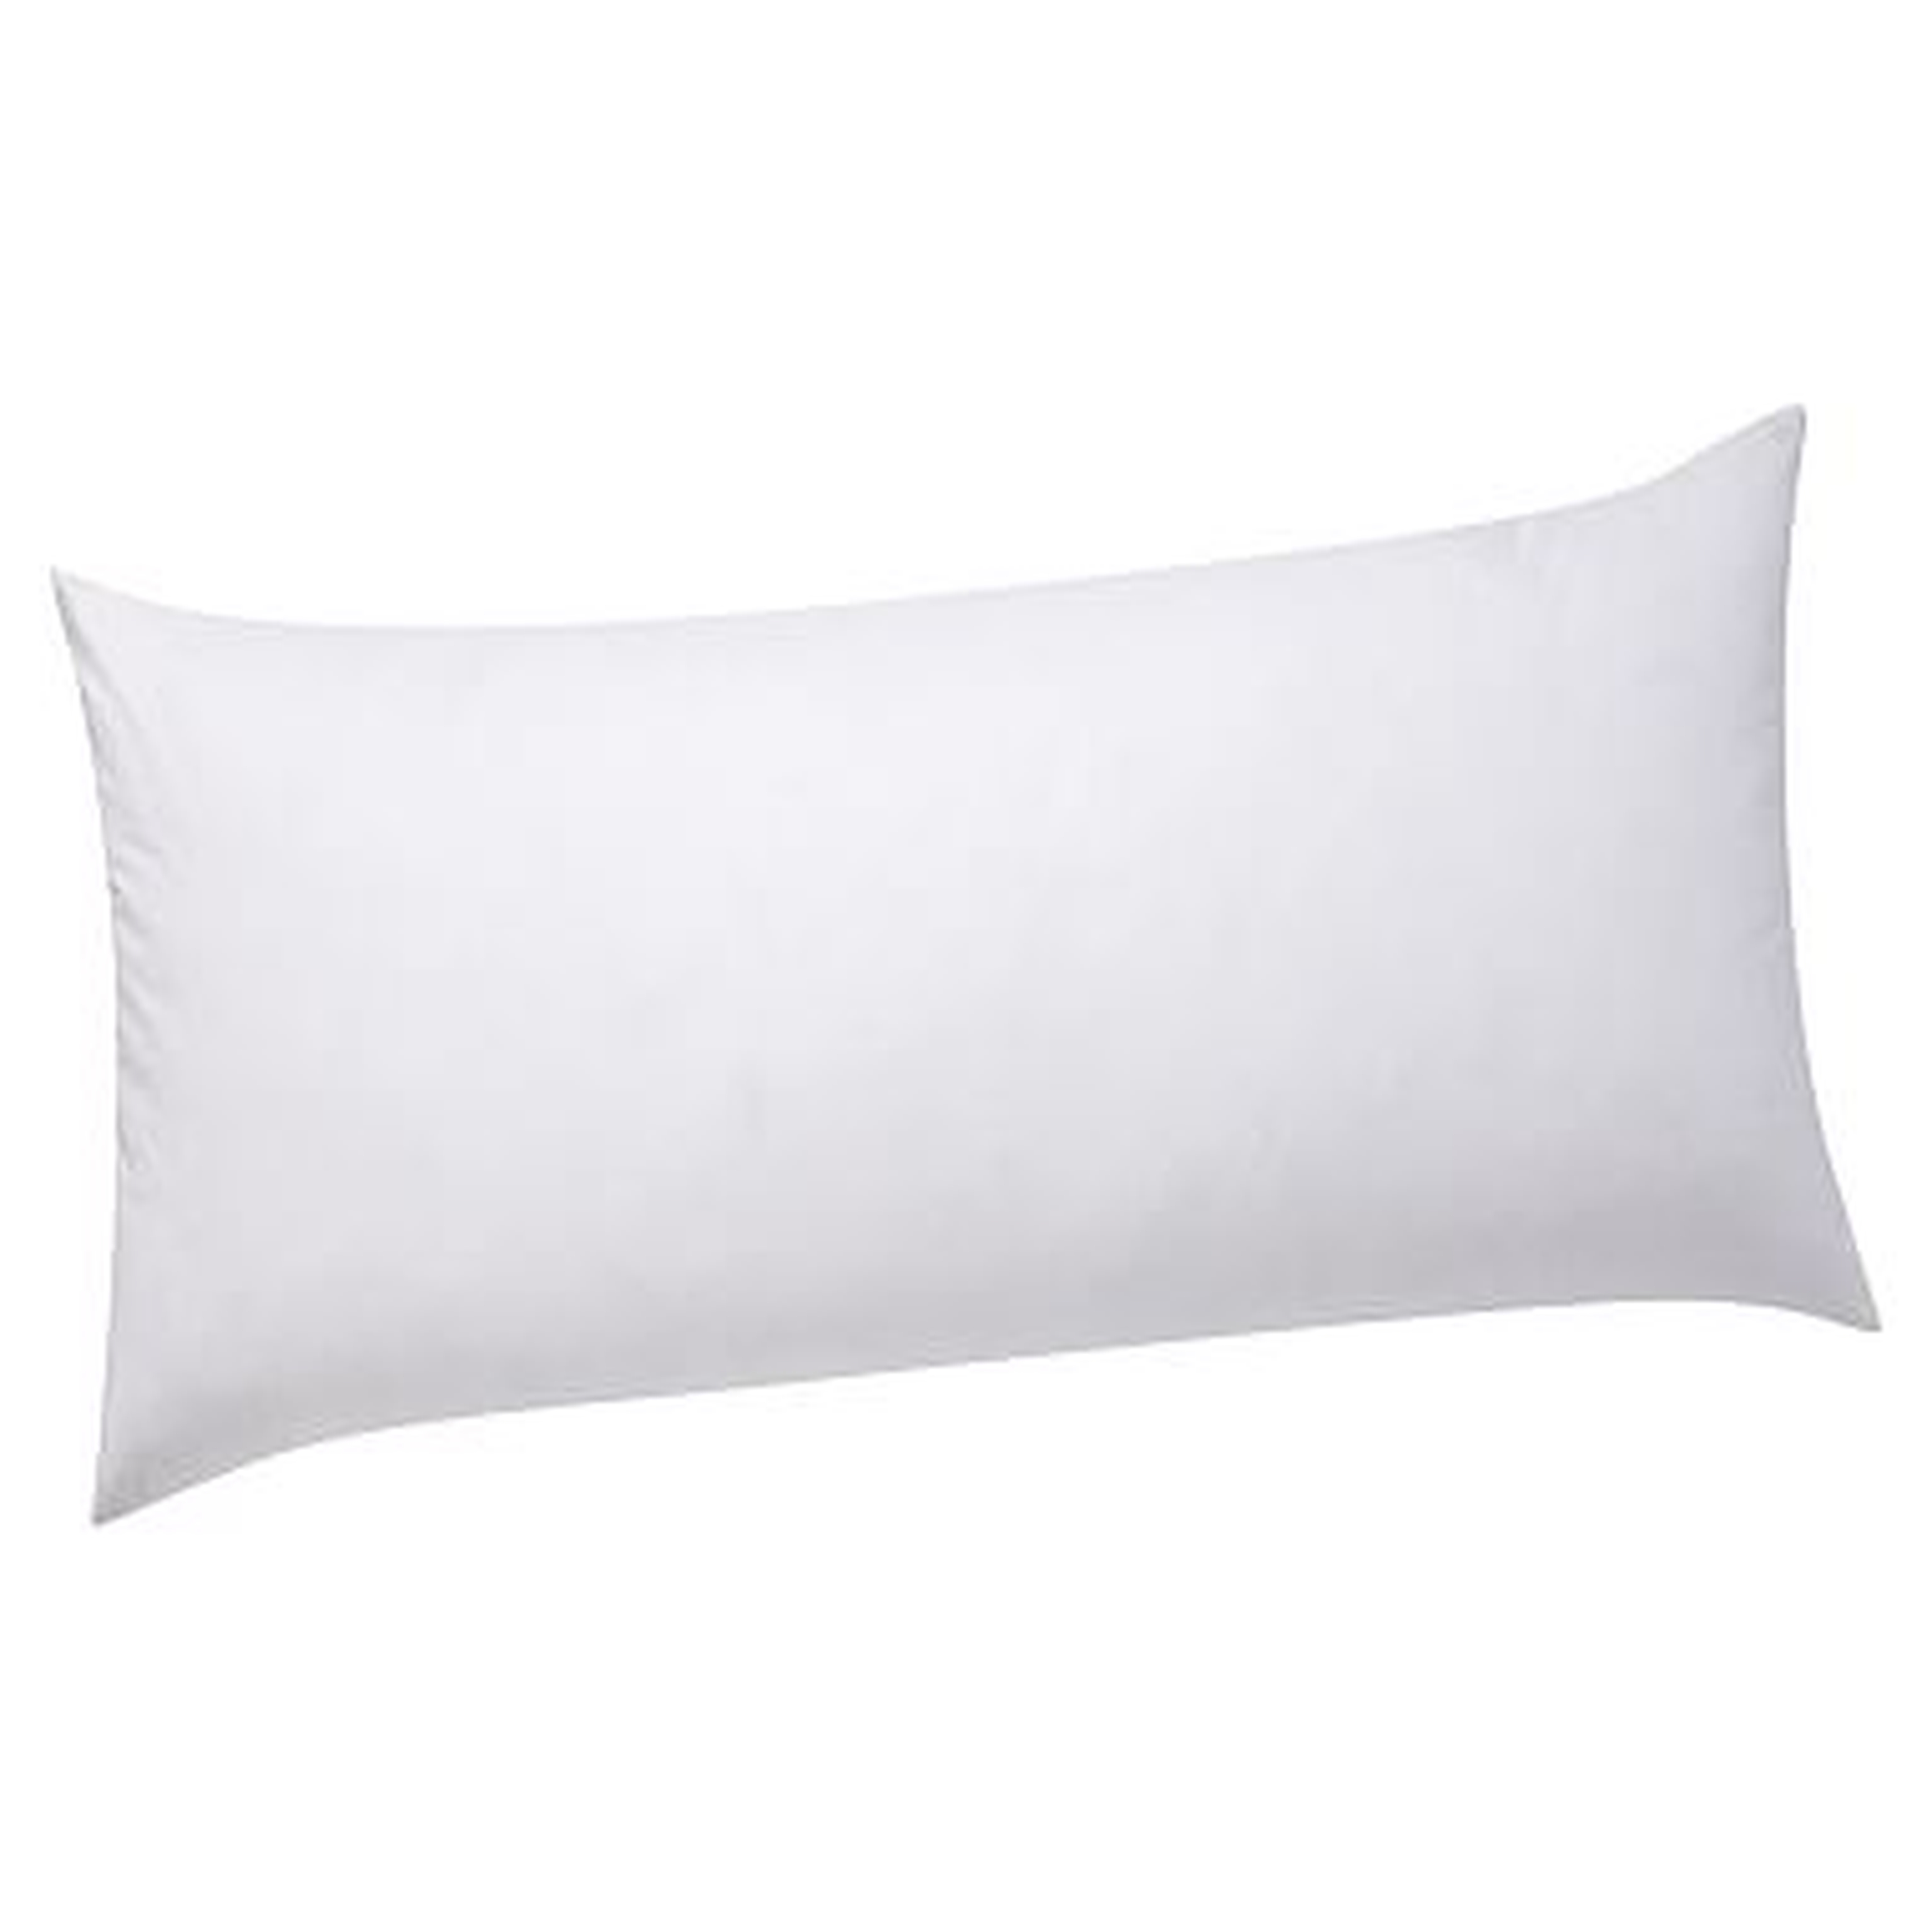 Lumbar Pillow Insert, 12"x24" - Pottery Barn Teen